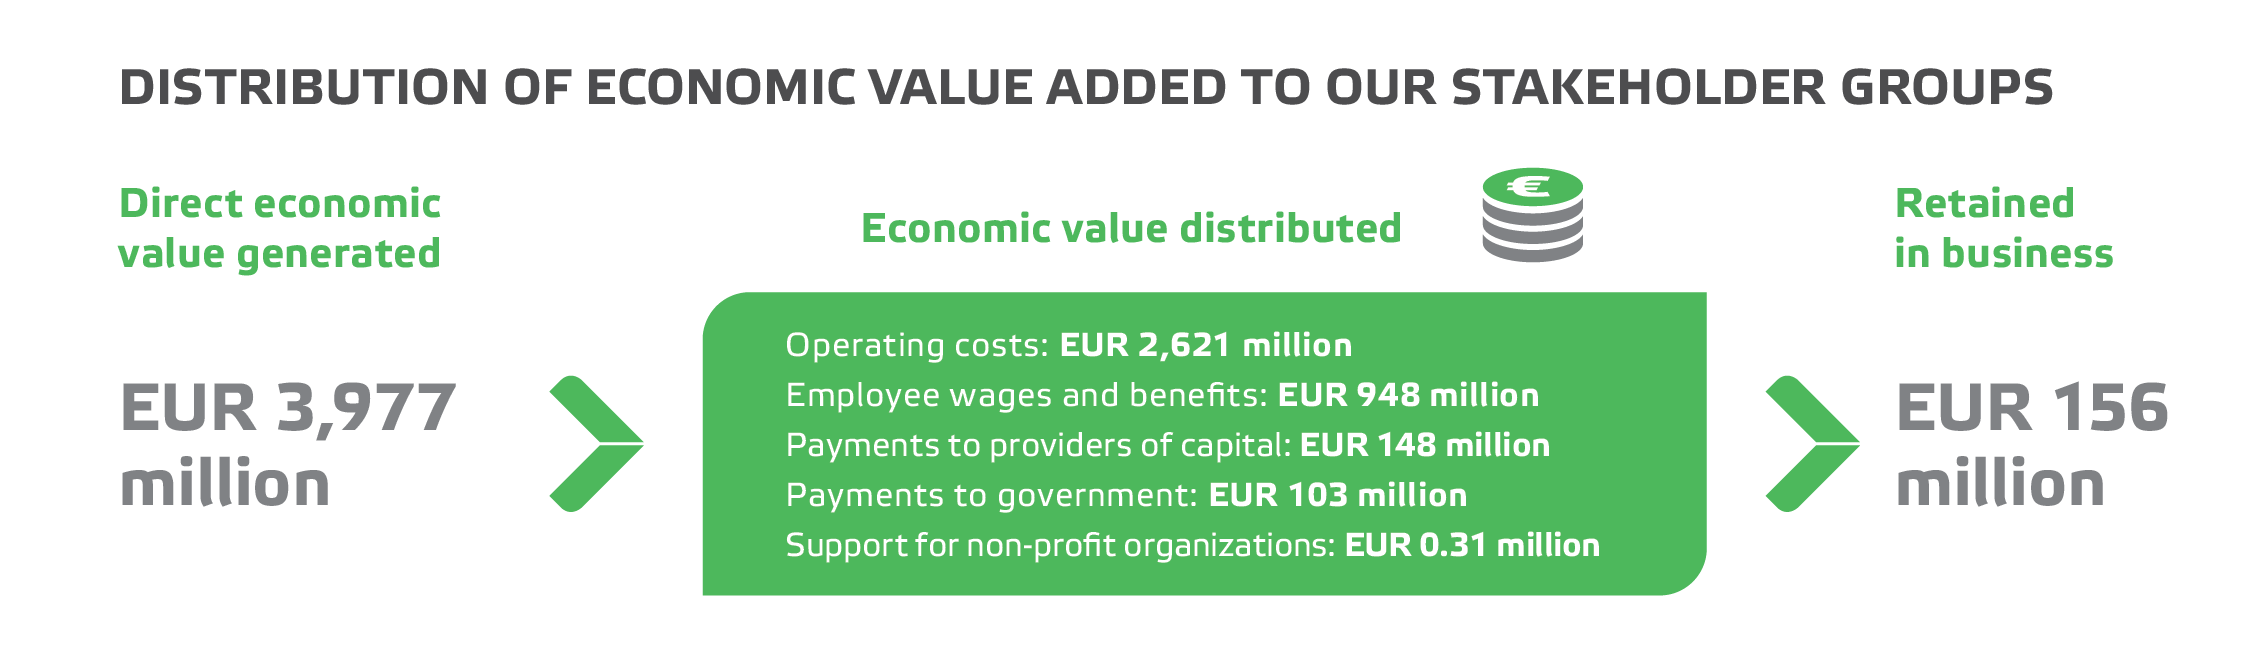 valmet_vsk_2021_EN_Distribution_of_economis_value.png